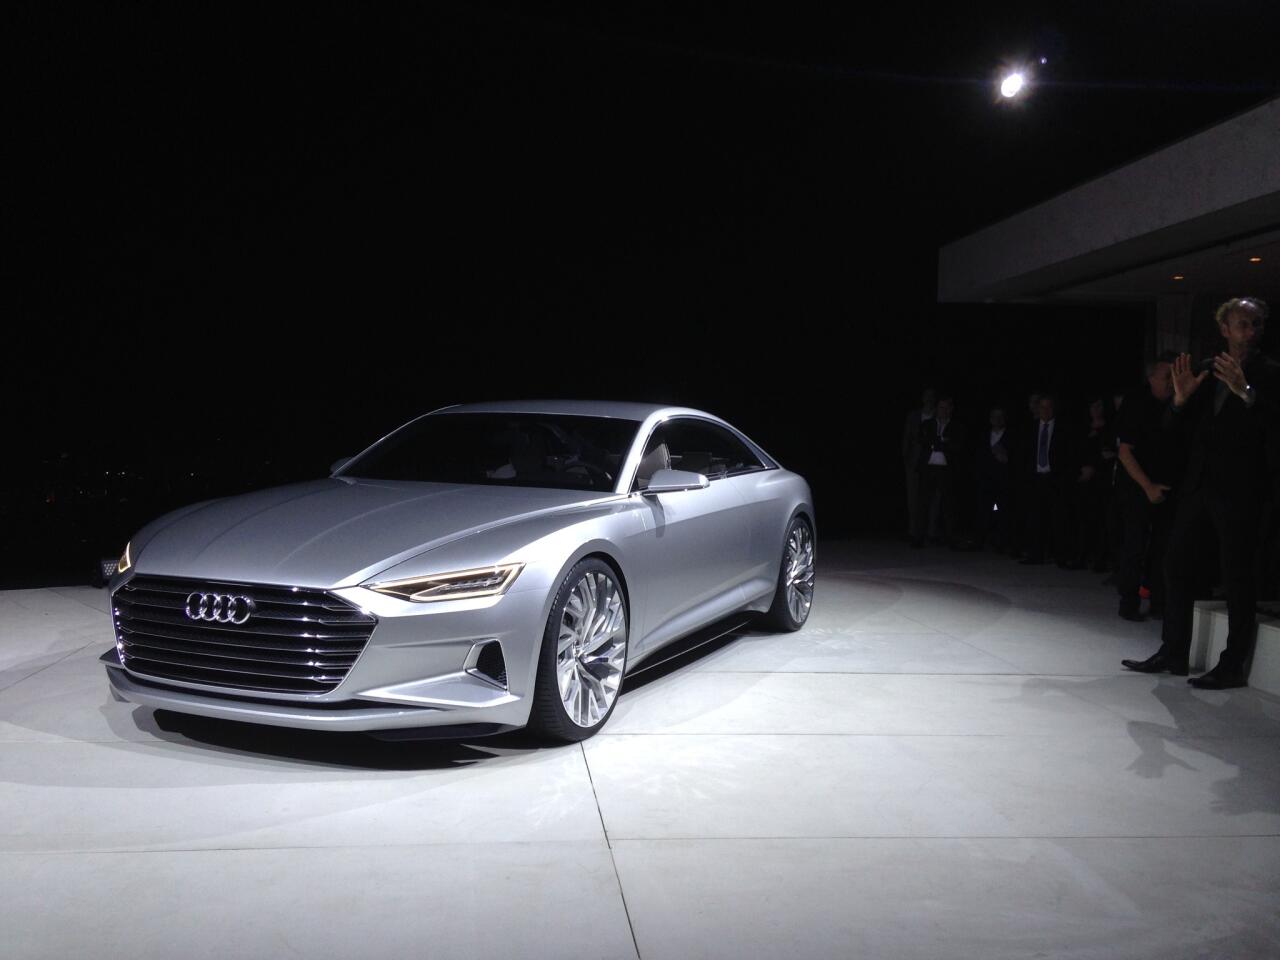 Audi Prologue concept car